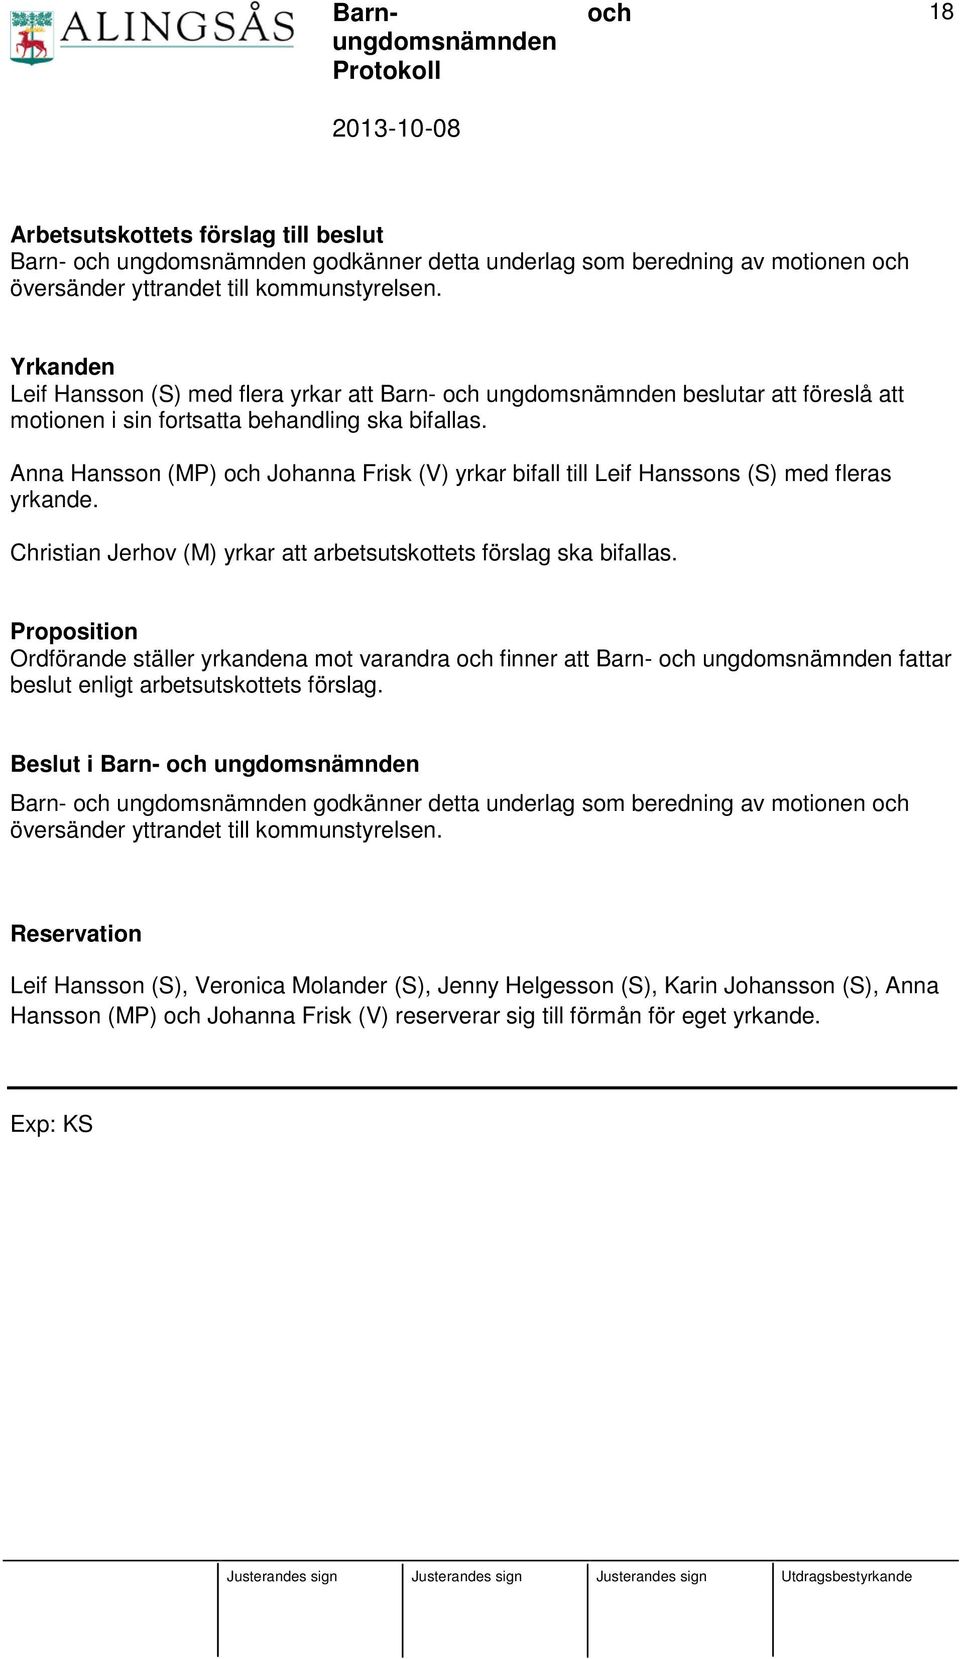 Anna Hansson (MP) Johanna Frisk (V) yrkar bifall till Leif Hanssons (S) med fleras yrkande. Christian Jerhov (M) yrkar att arbetsutskottets förslag ska bifallas.